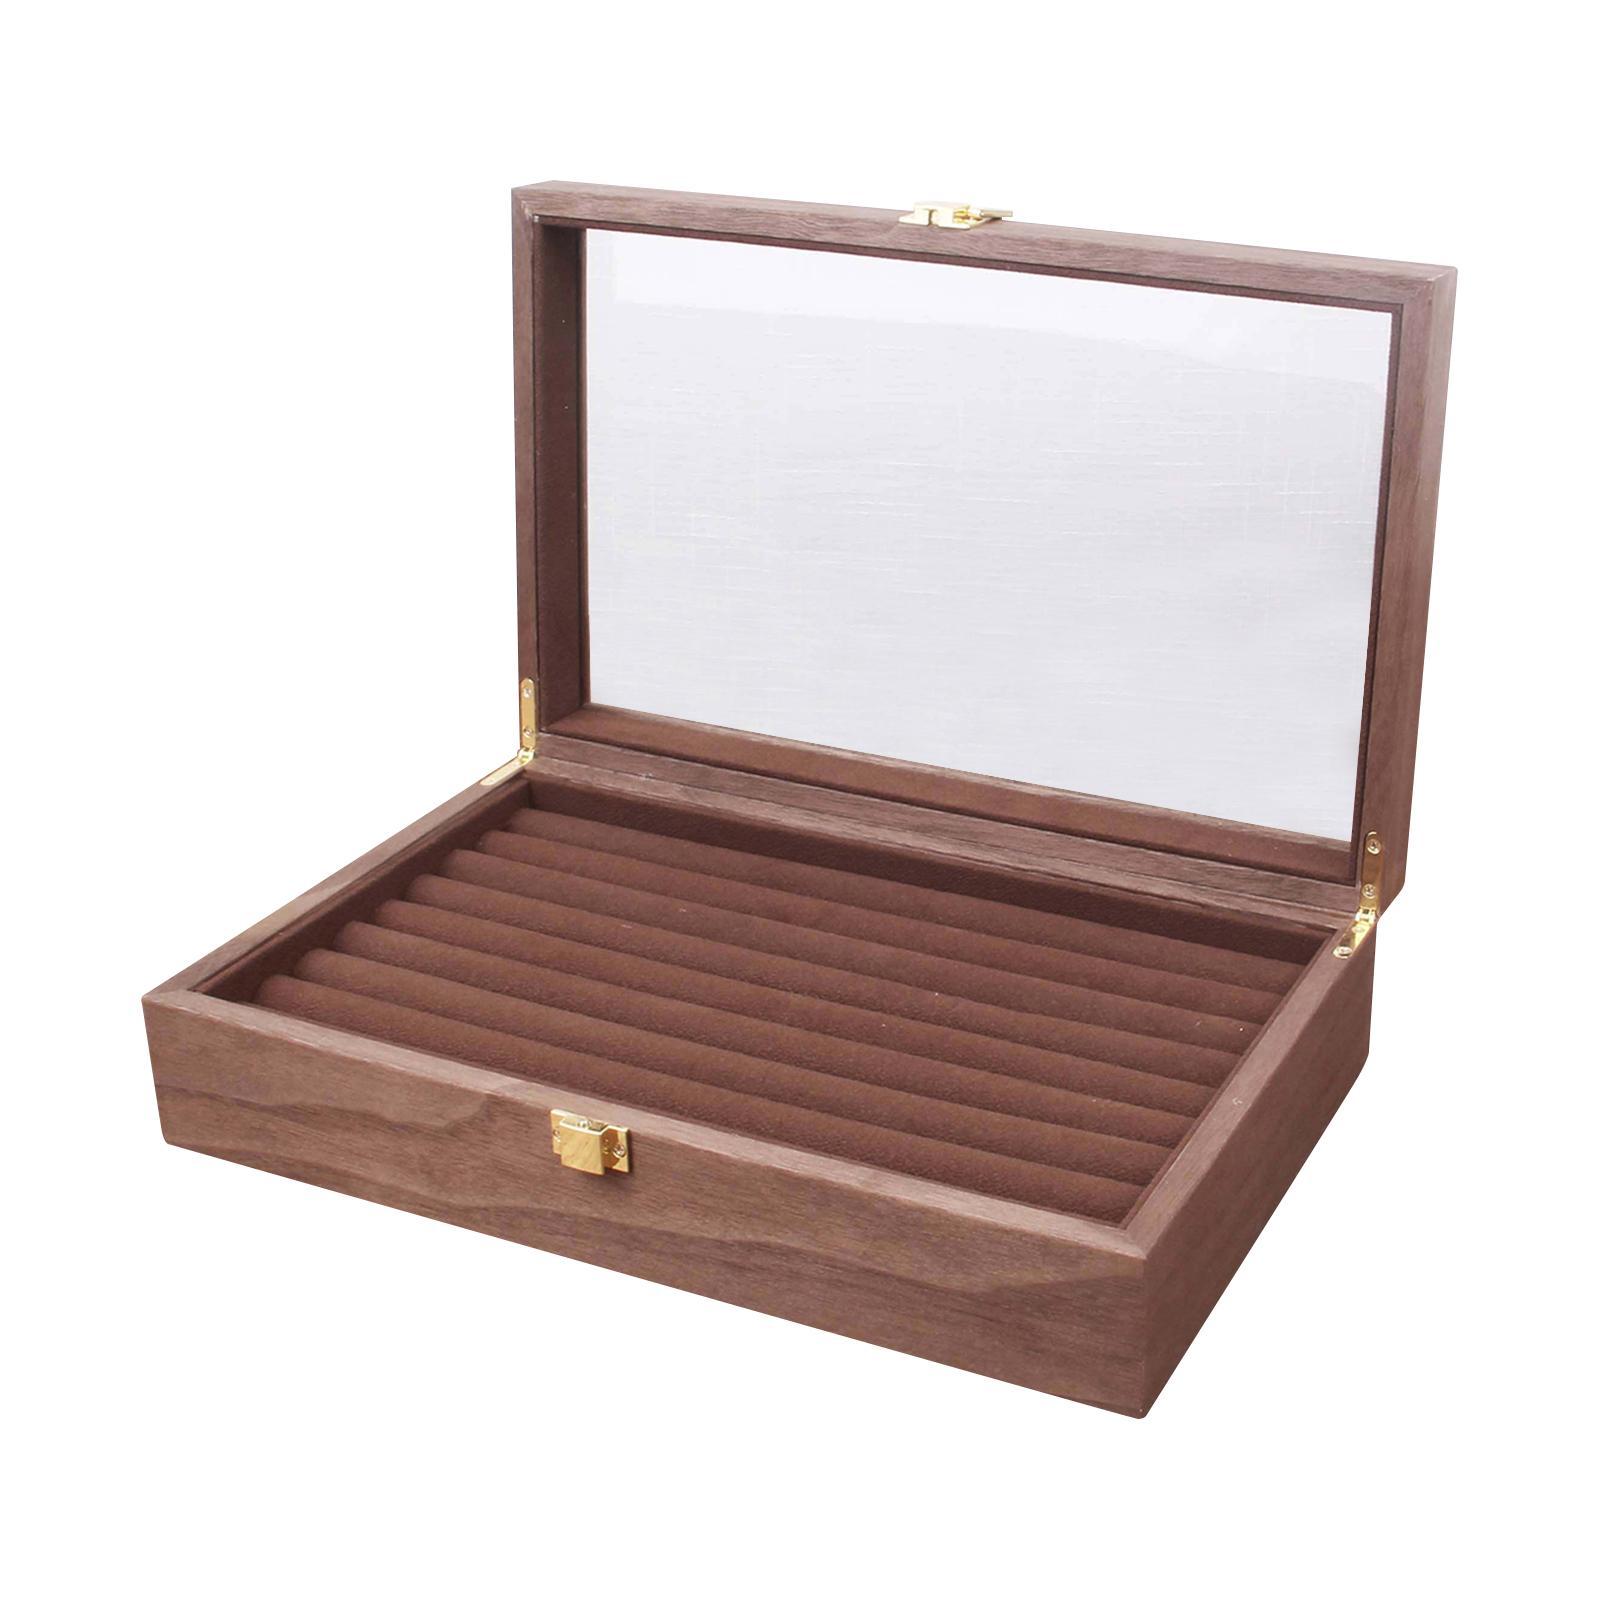 Premium Wooden Glass  Display Box Jewelry Holder Storage Organizer Case